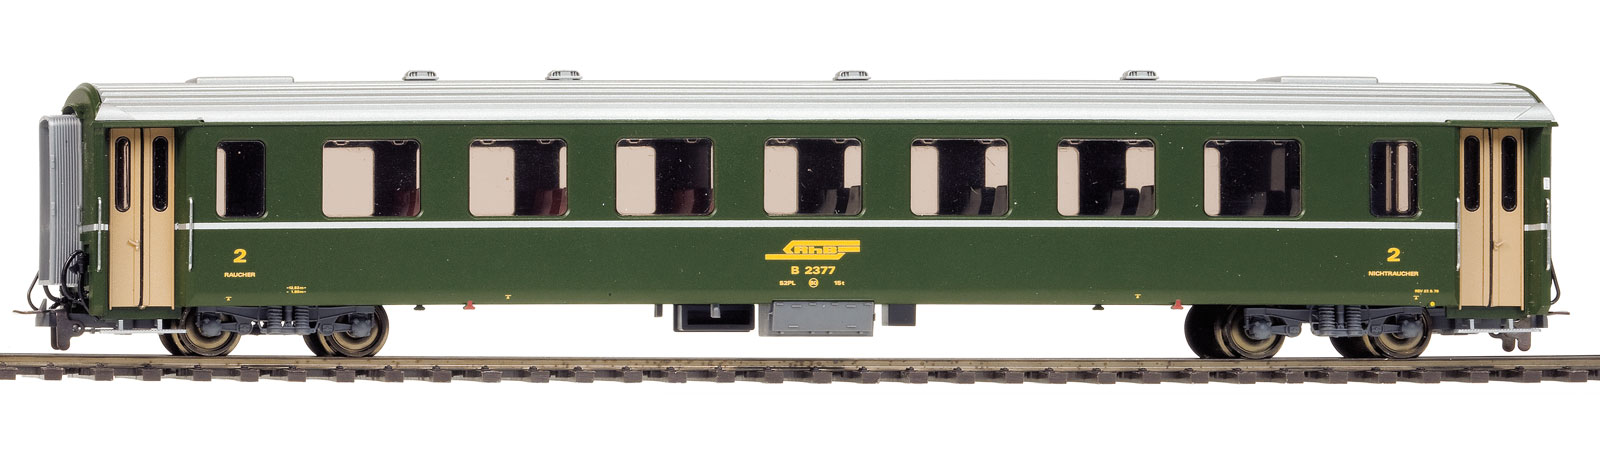 RhB B2436 EWII 2.Kl. grün Ep4 Personenwagen für Albula-Schnellzug